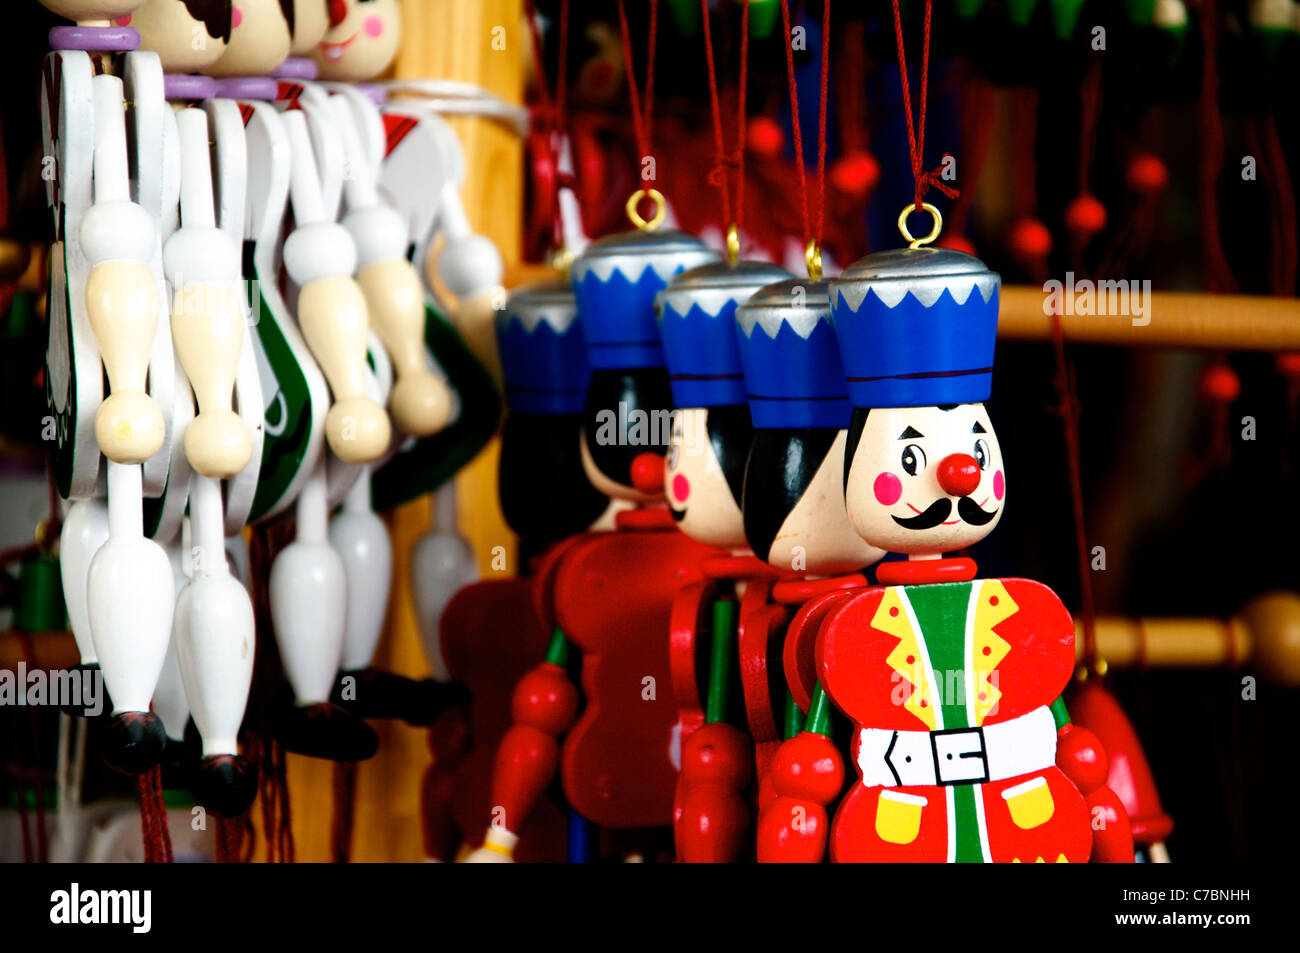 Plusieurs Pantins en bois suspendu dans un magasin de jouets suranné Banque D'Images